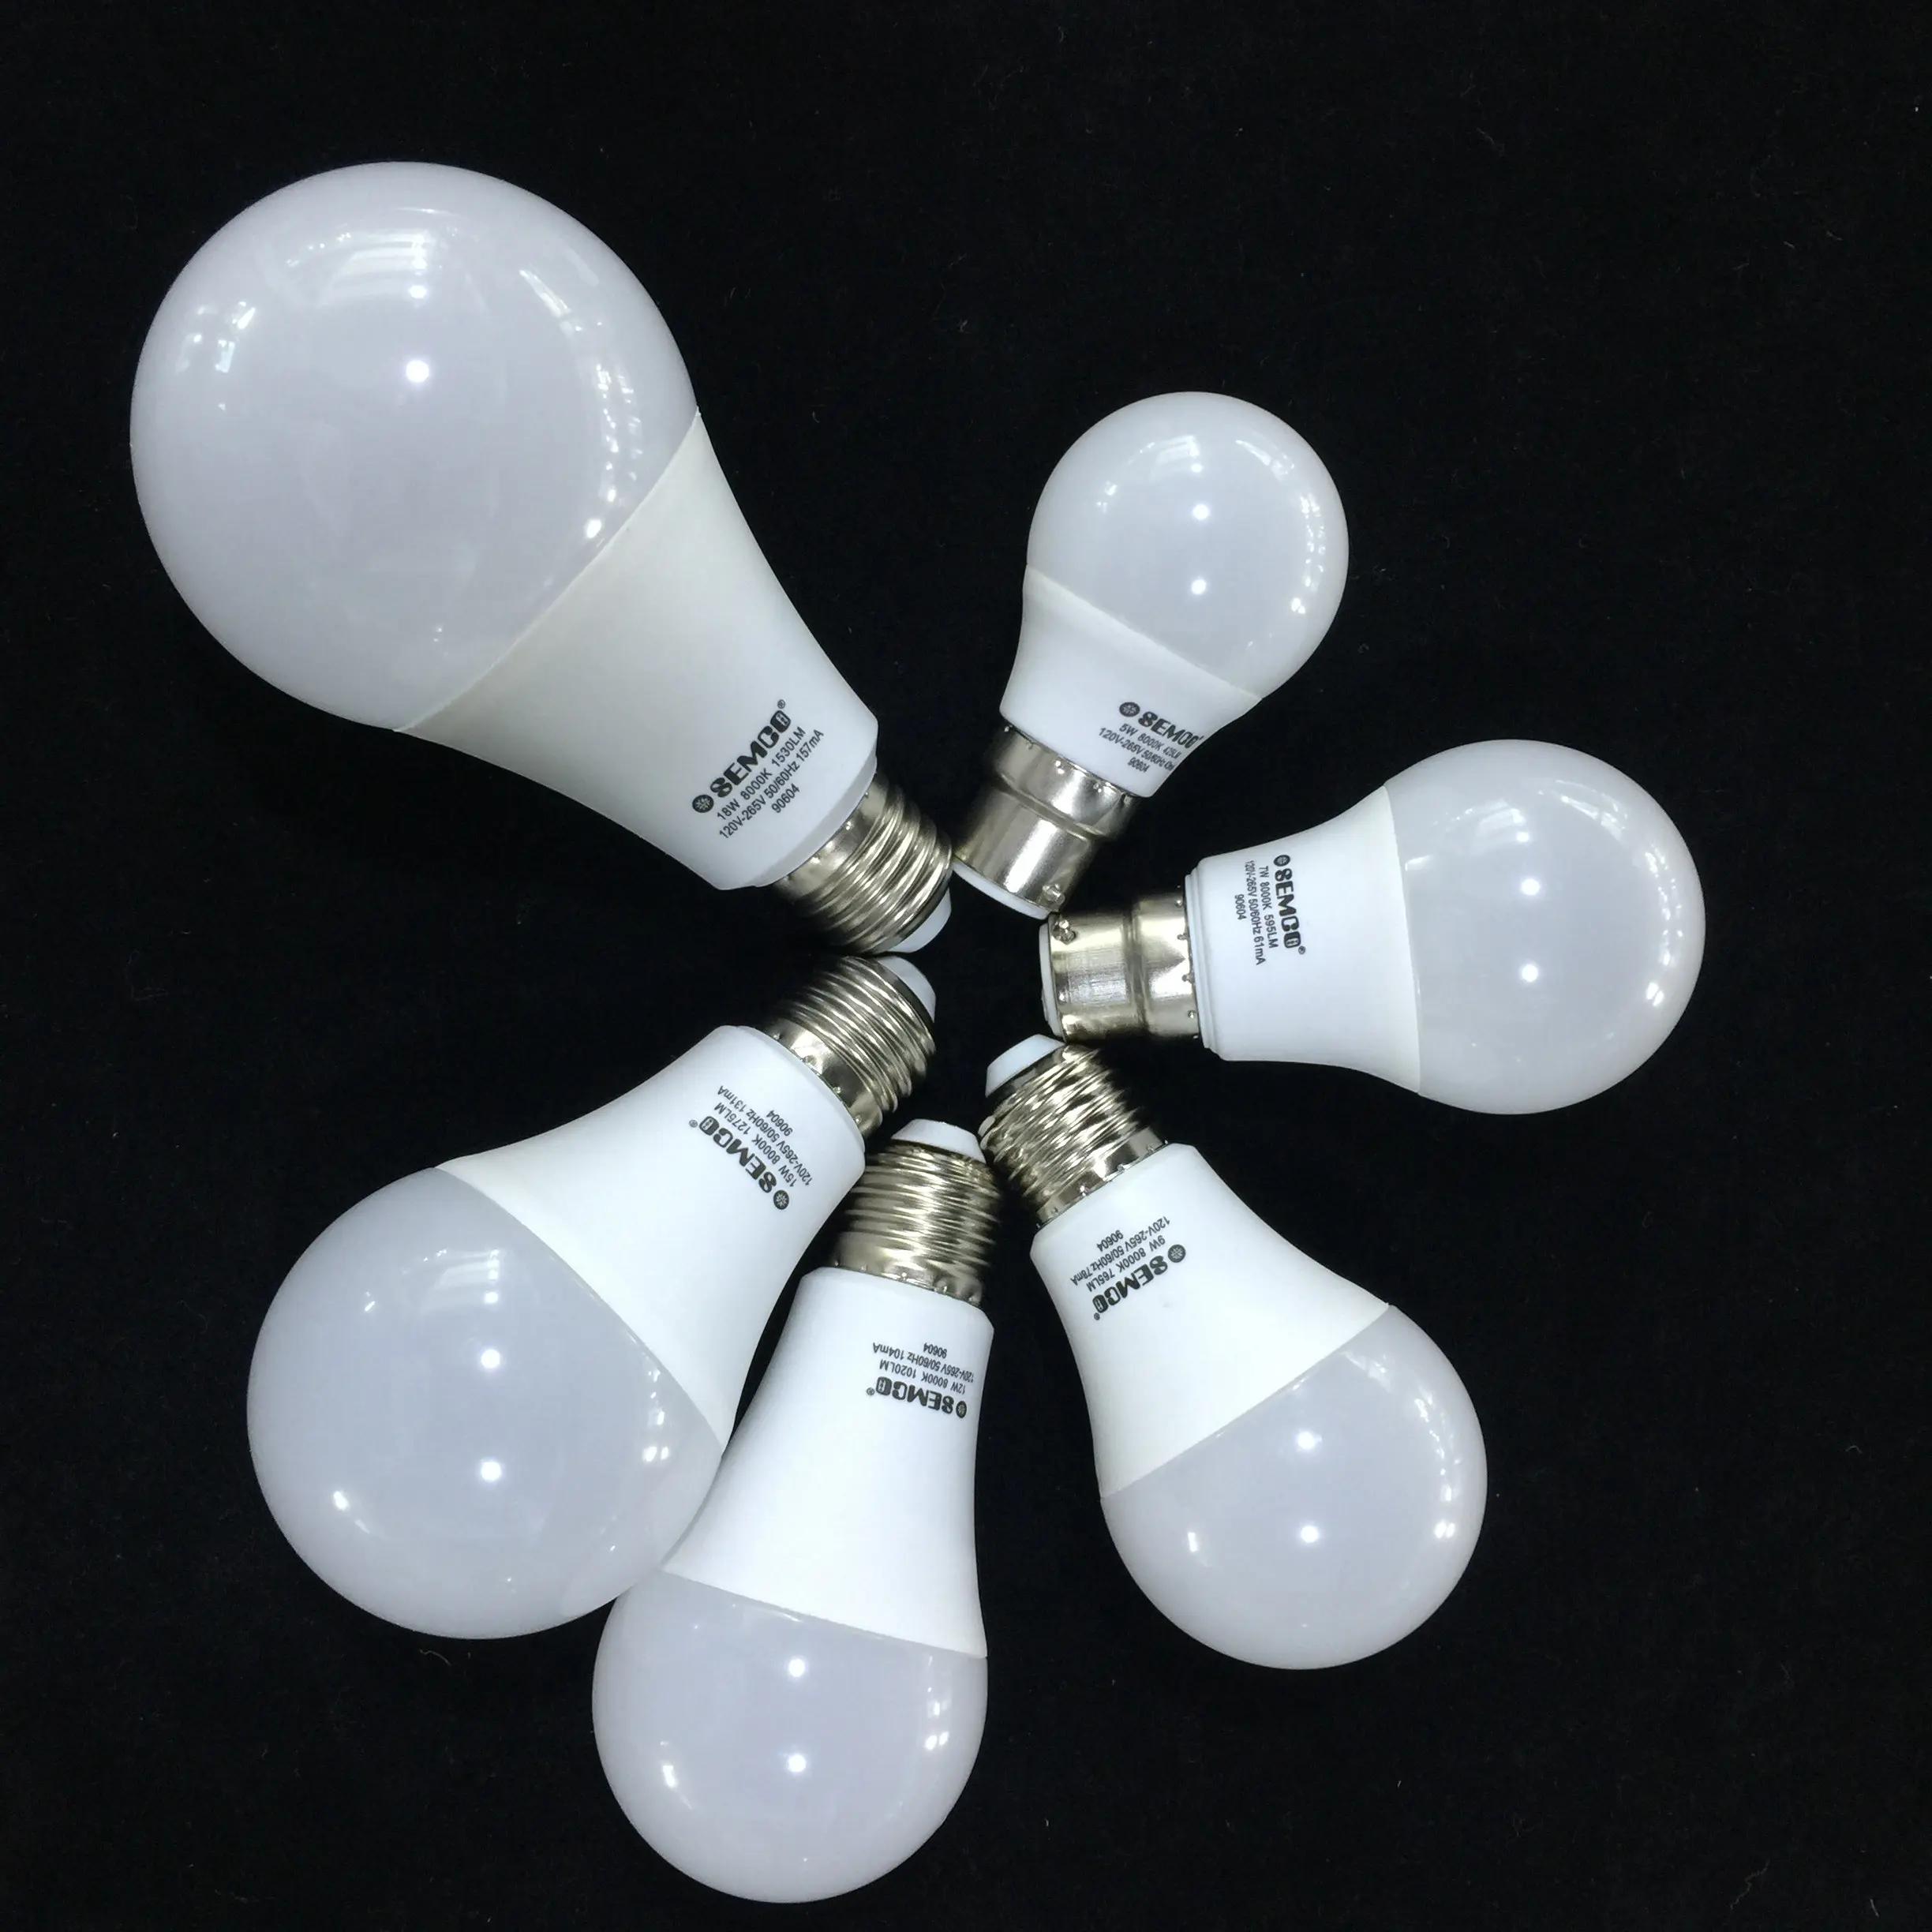 Lâmpada led de marca semco preço barato, 5w 7w, 9w, lâmpada led para uso de residência